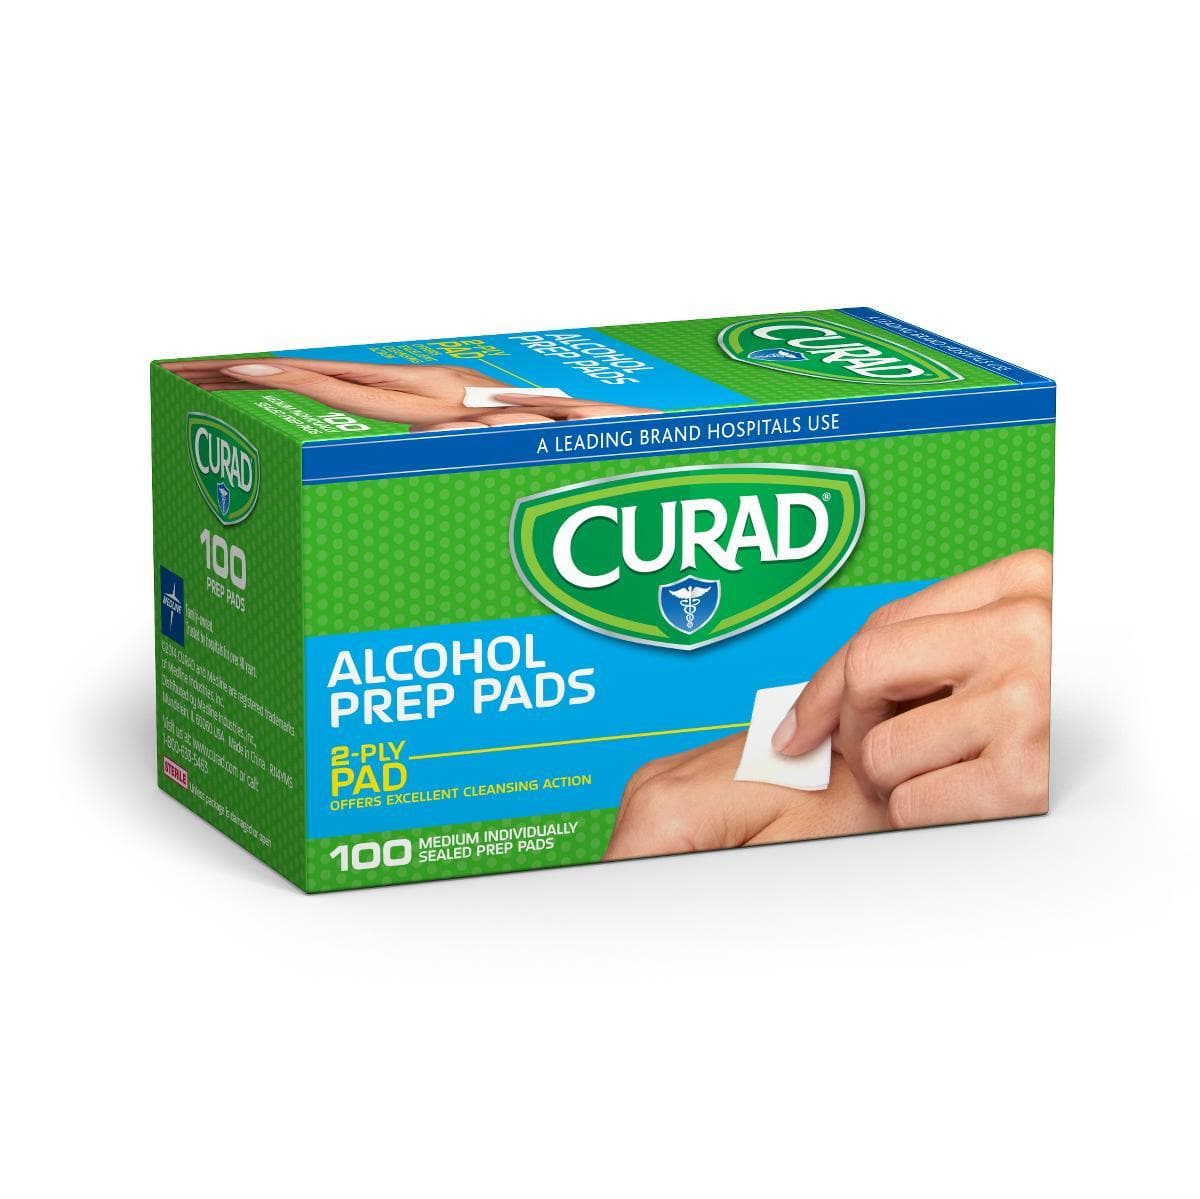 Medline CURAD Medium 2-Ply Sterile Alcohol Prep Pads - Senior.com Alcohol Wipes